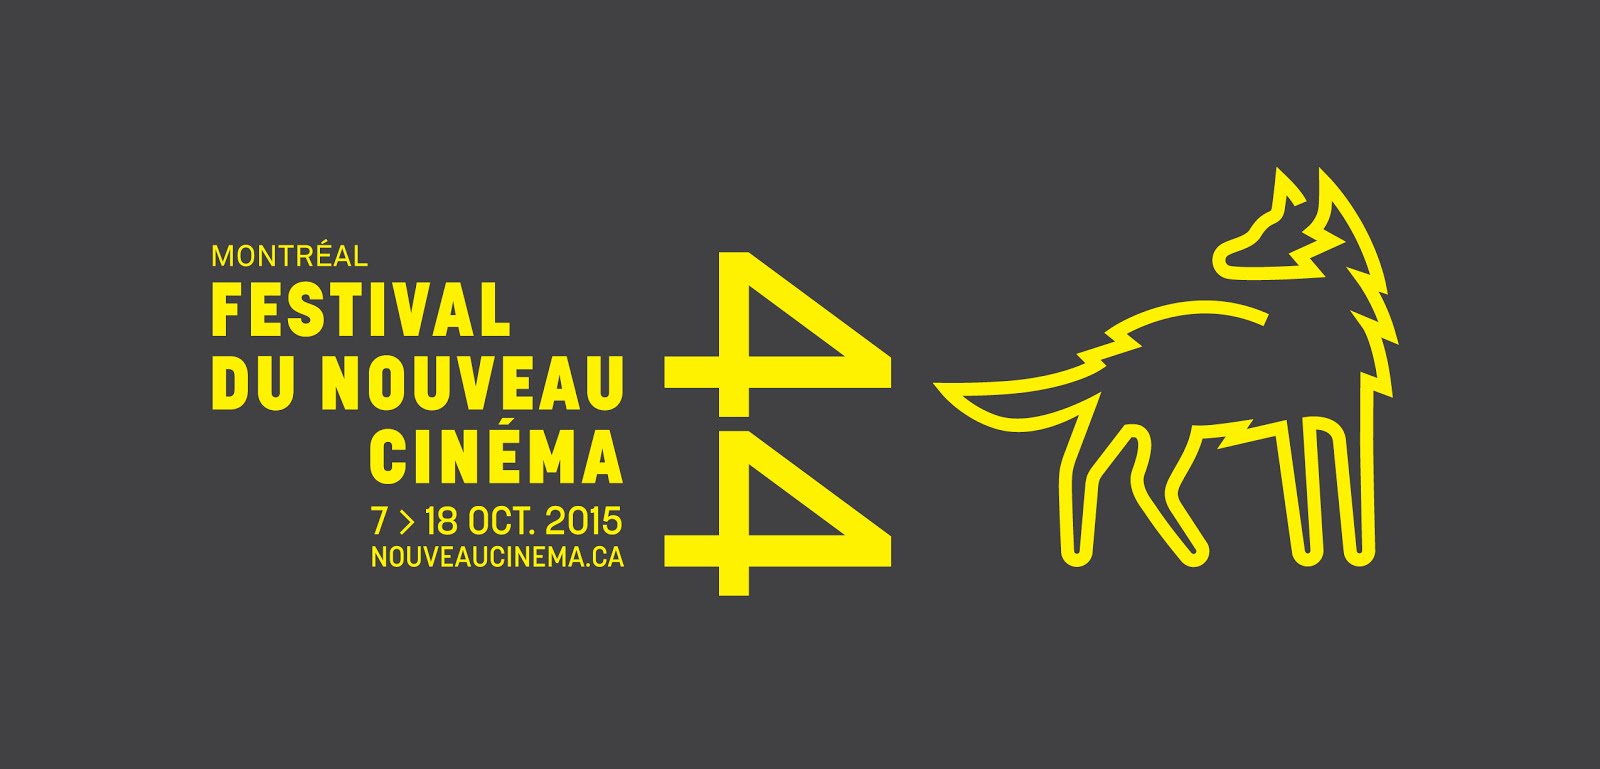 Festival du Nouveau Cinéma - click for the festival's website